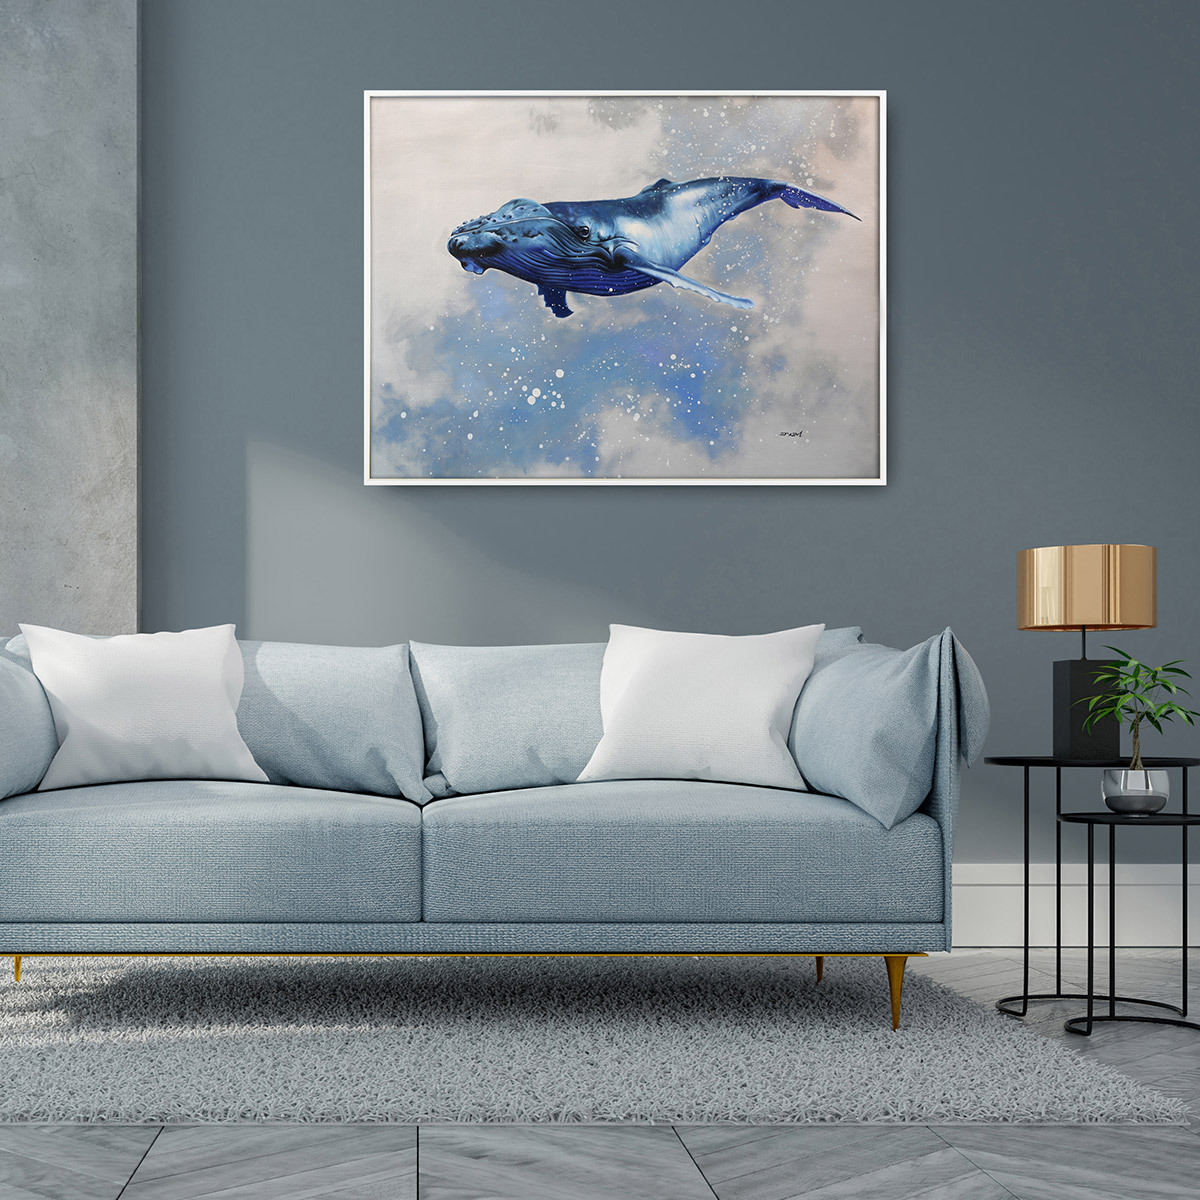 지클레 그림 액자 80x60cm - 혹등고래의 여행